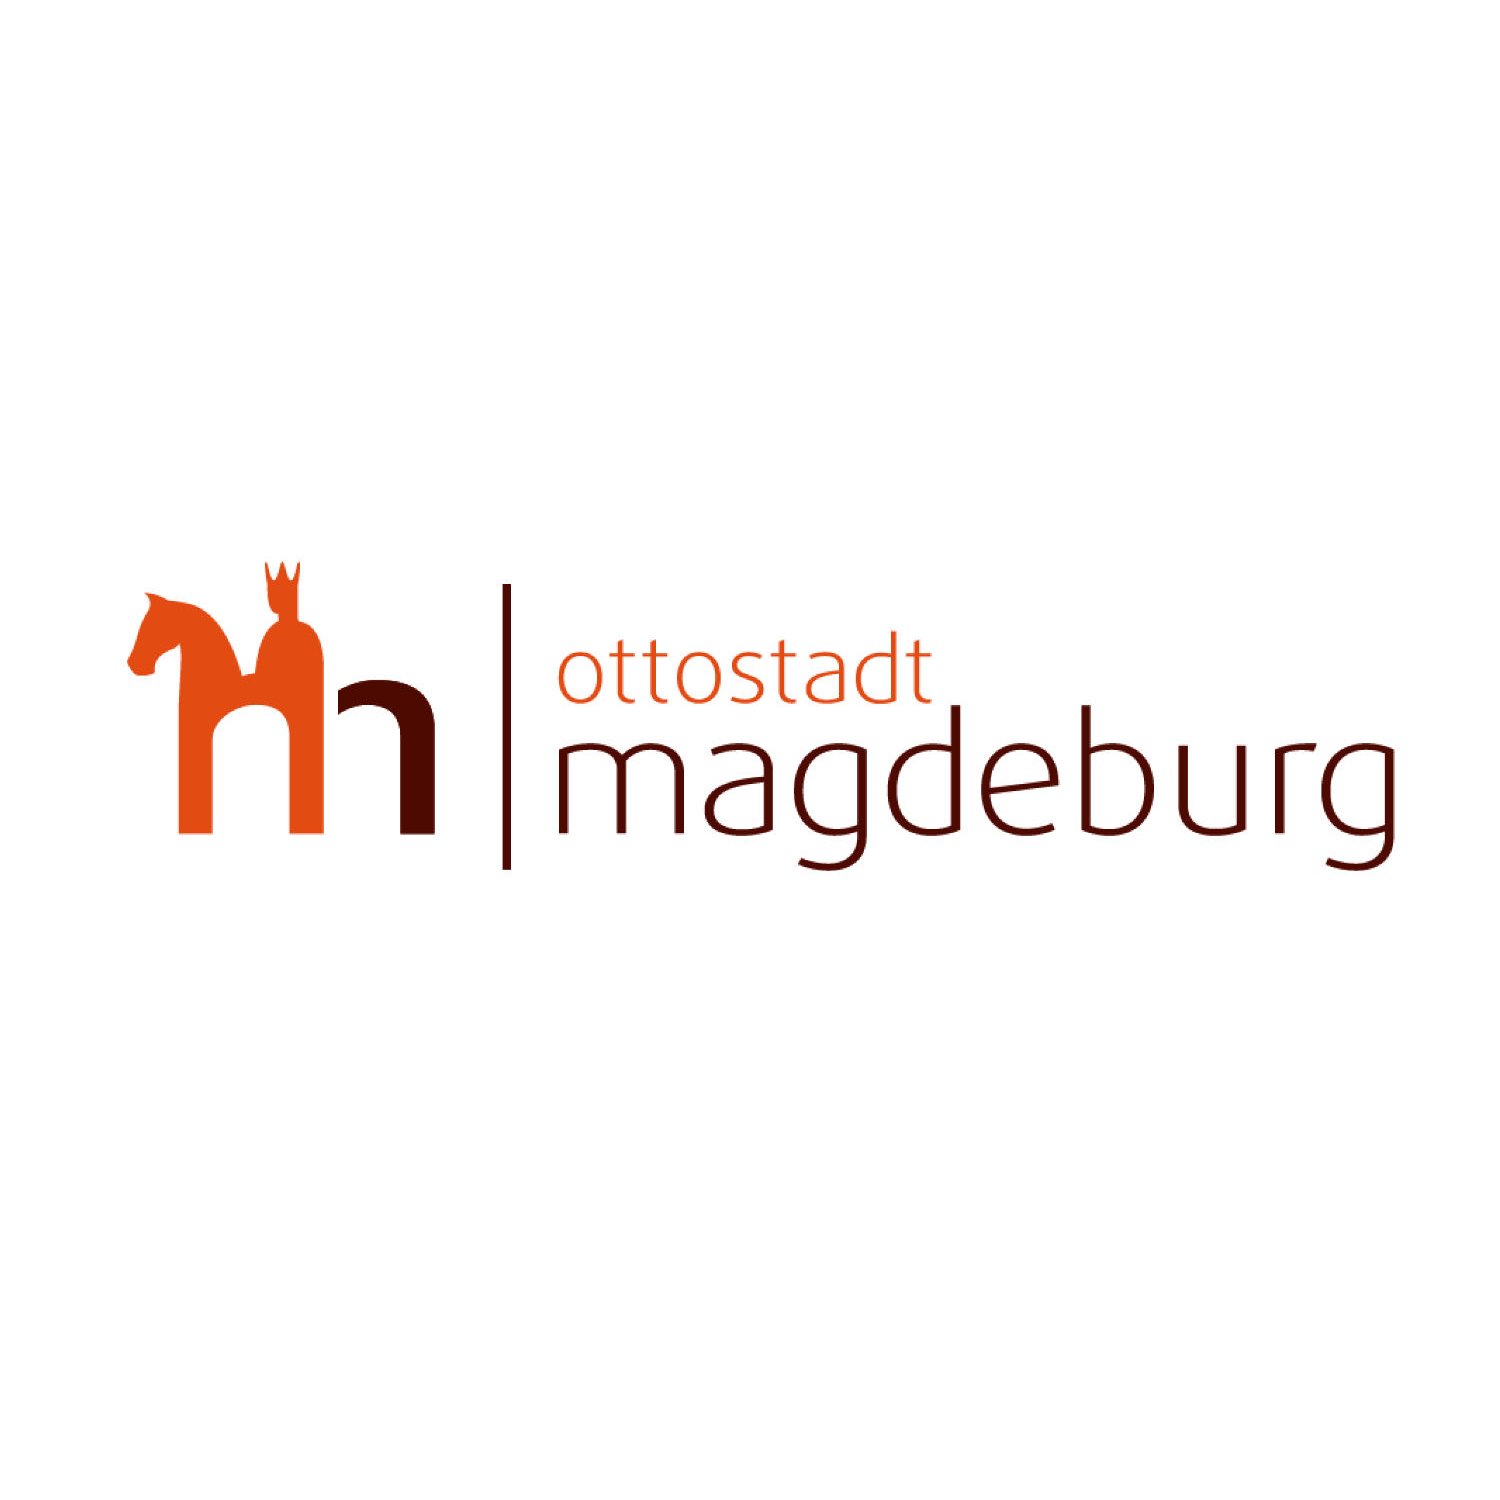 magdeburg-ottostadt-logo.jpg